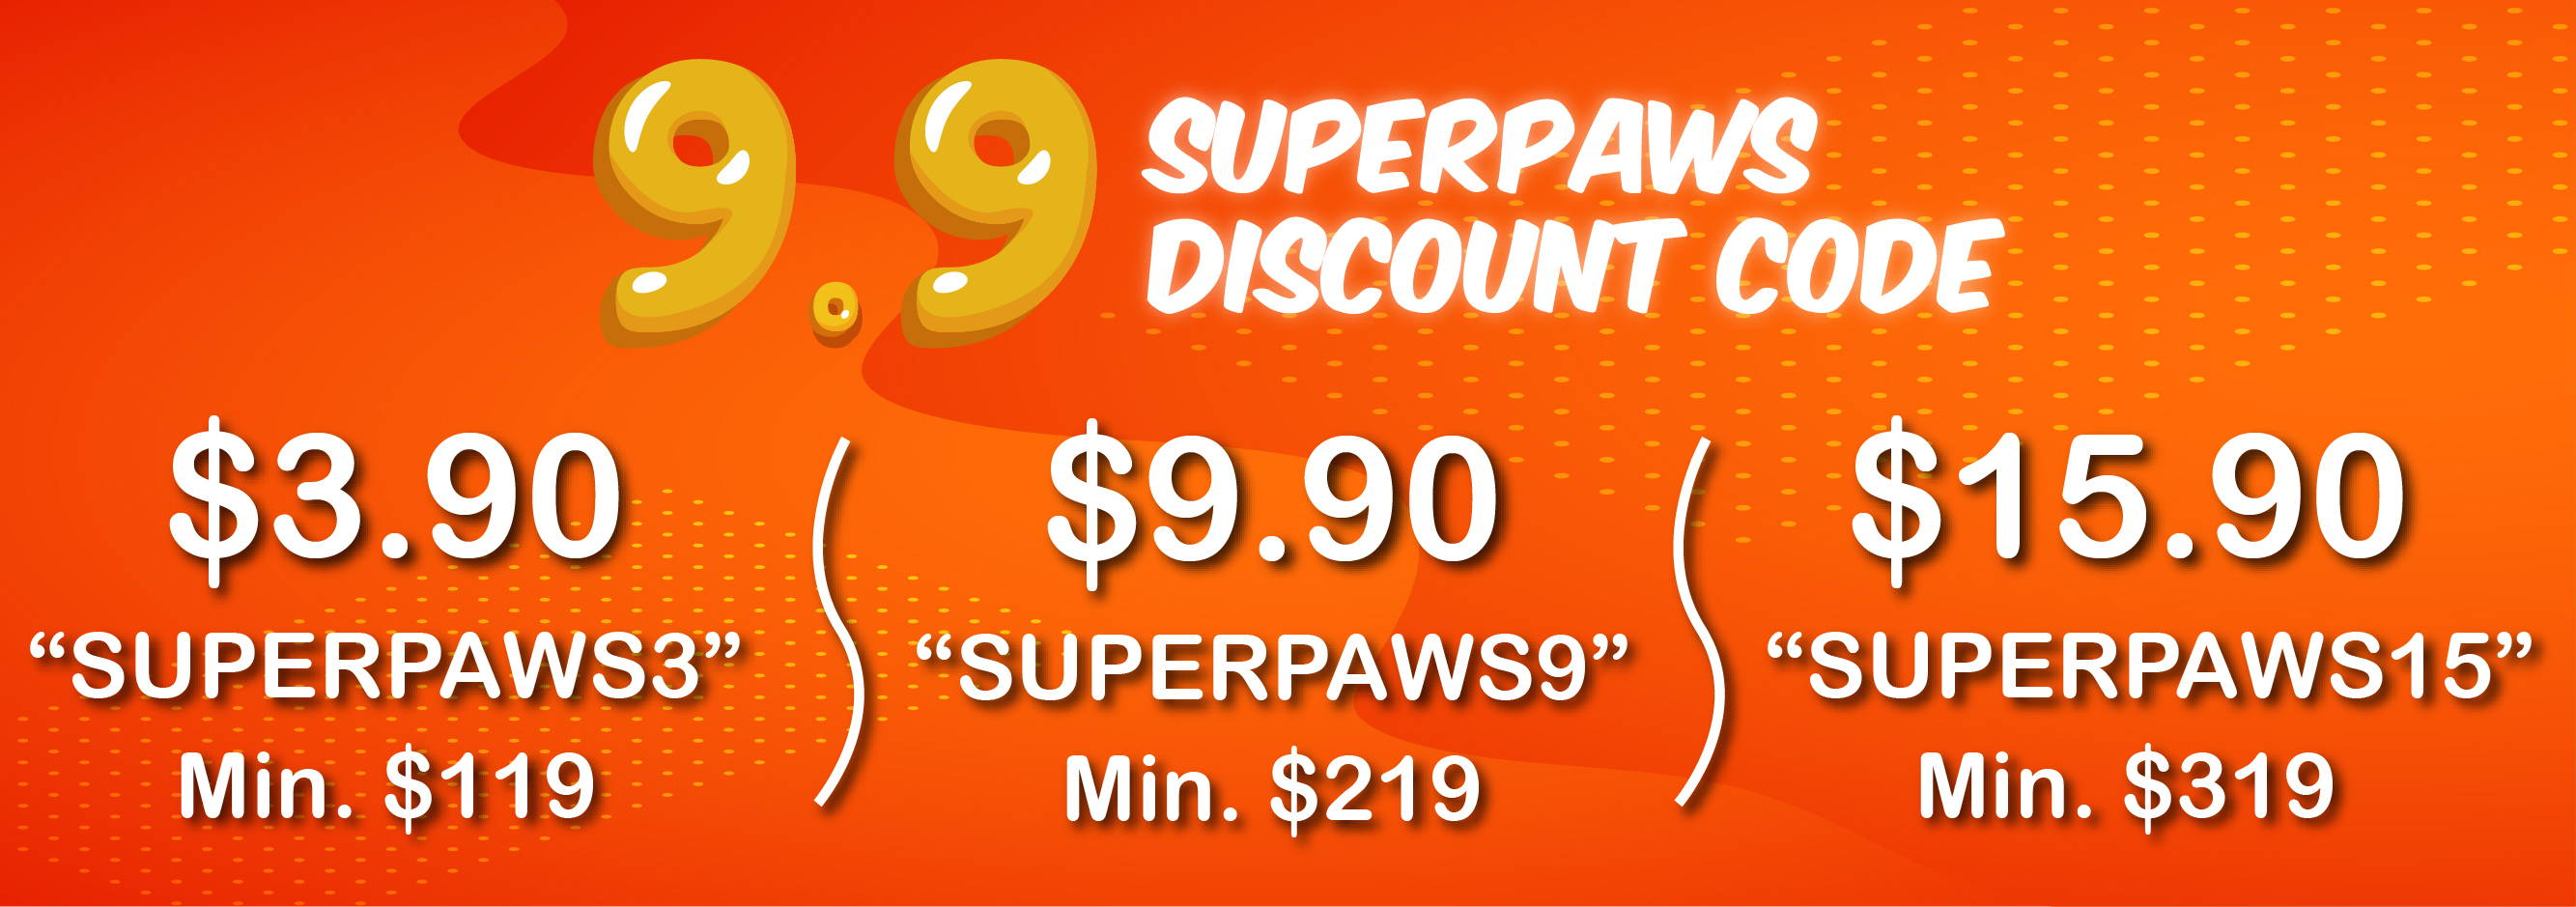 9.9 Superpaws sales 2020 online pet shop pawpy kisses singapore.